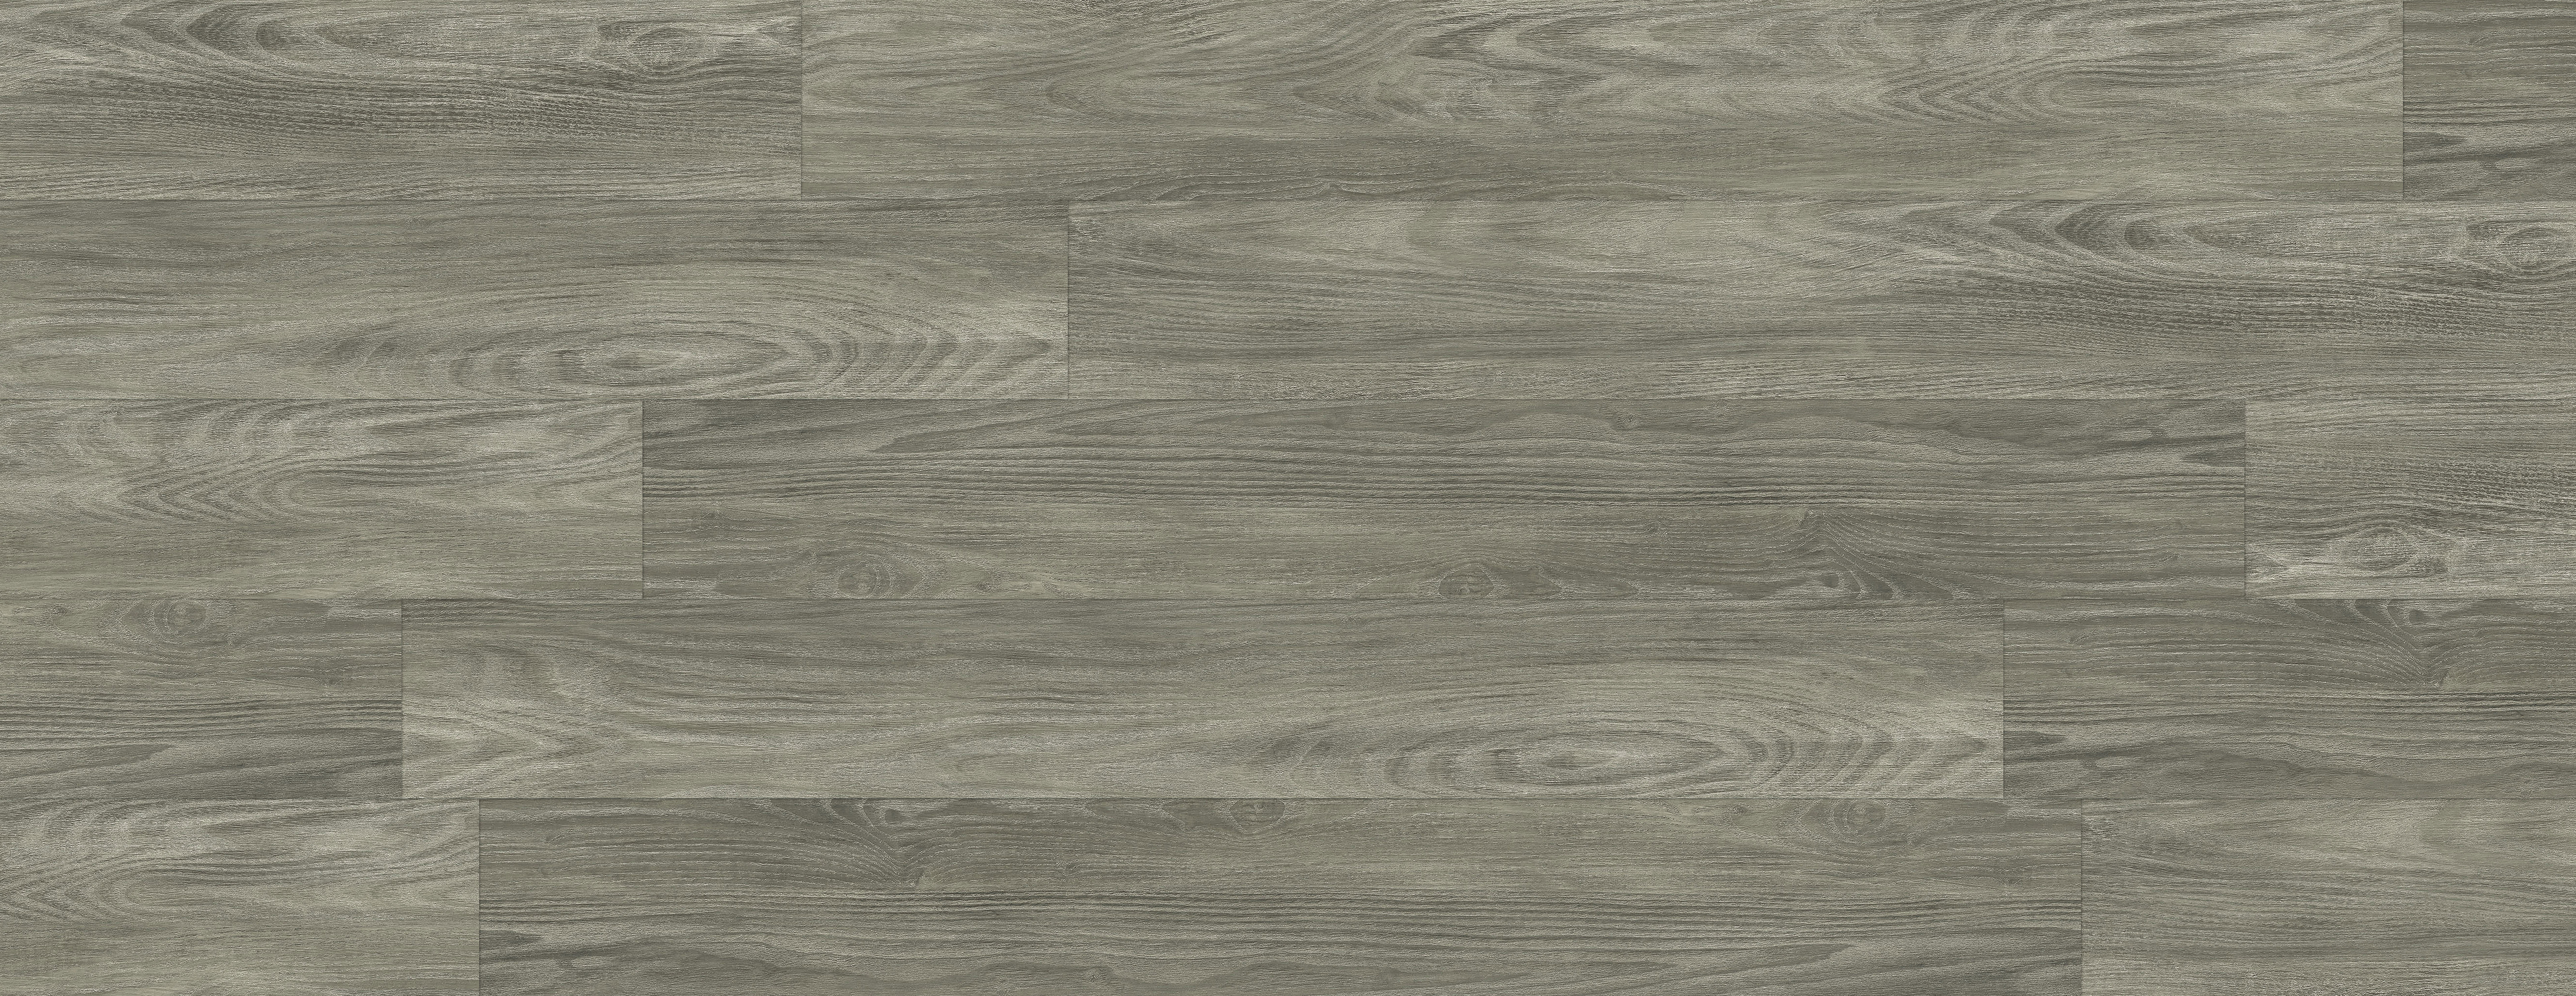 Red Oak Solid Hardwood Flooring 2 25, Builder S Pride Hardwood Flooring Reviews